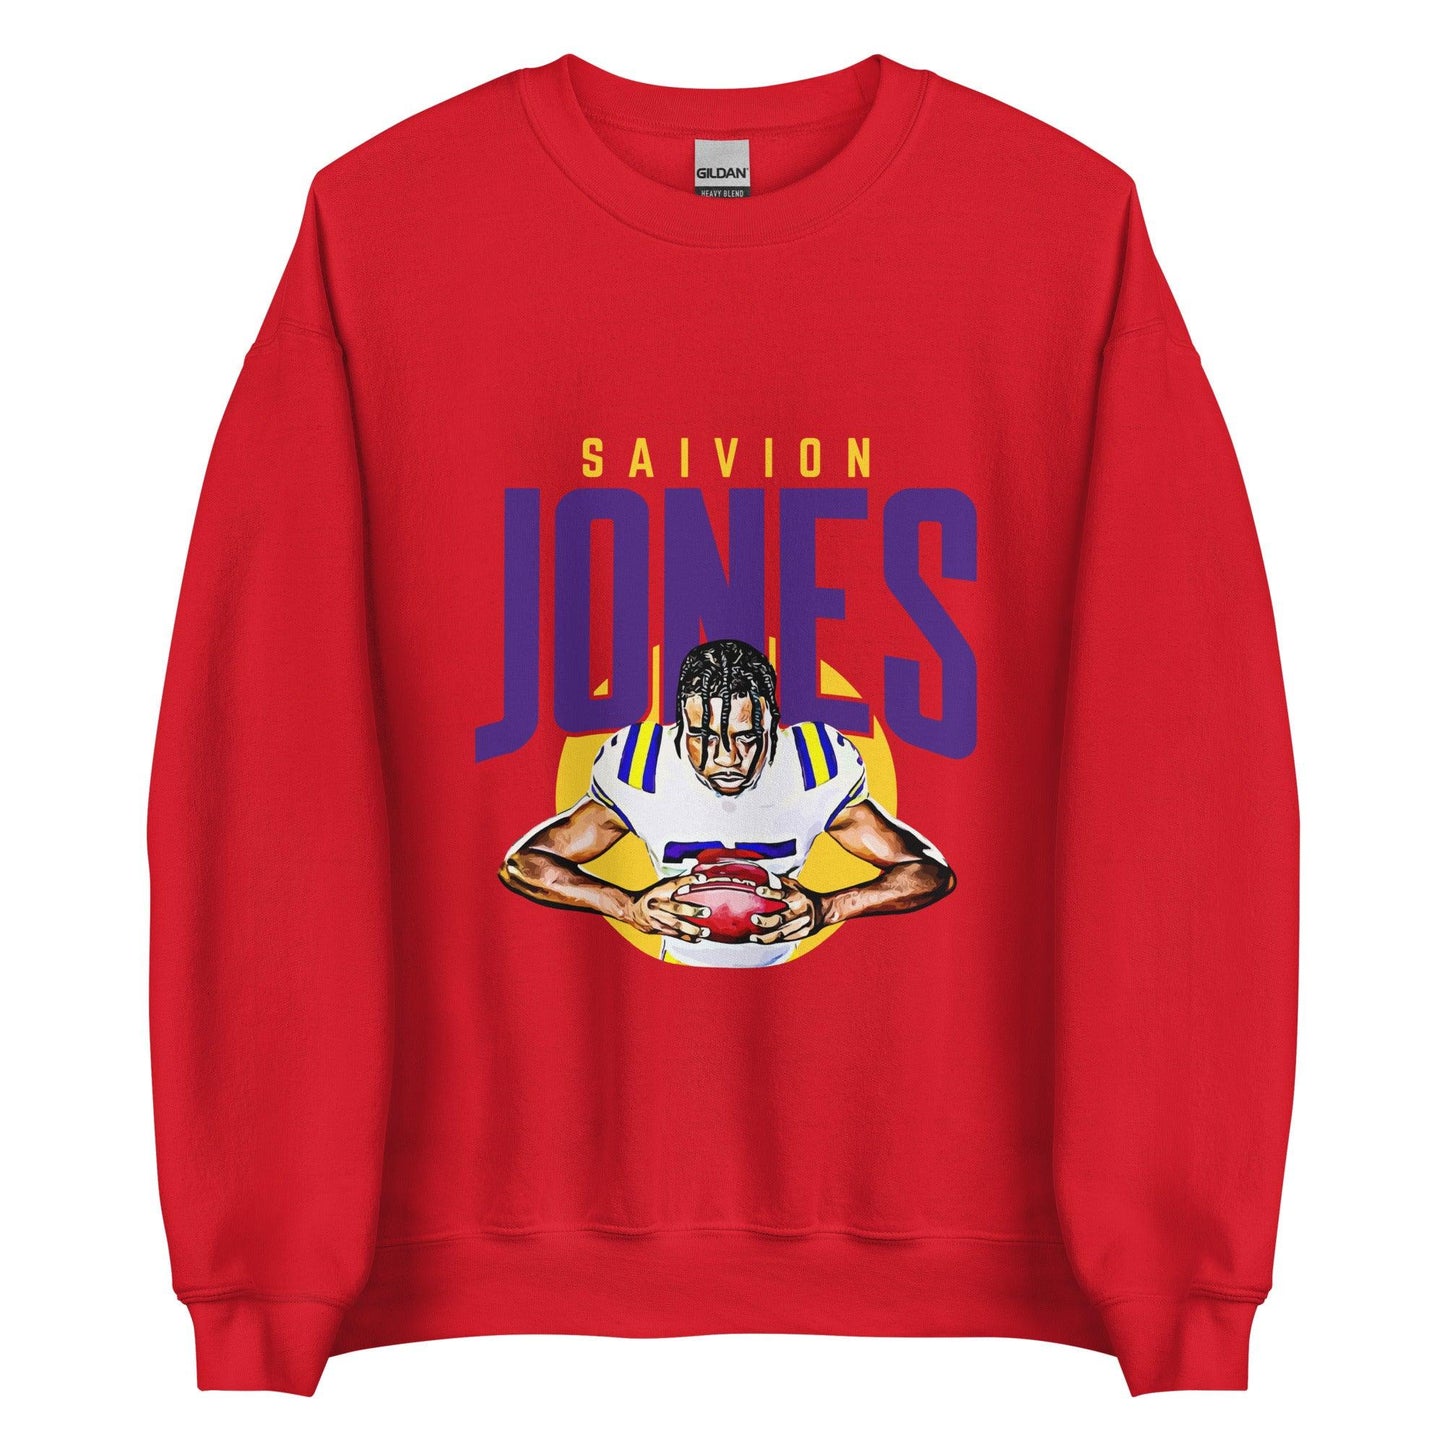 Saivion Jones "Focused" Sweatshirt - Fan Arch